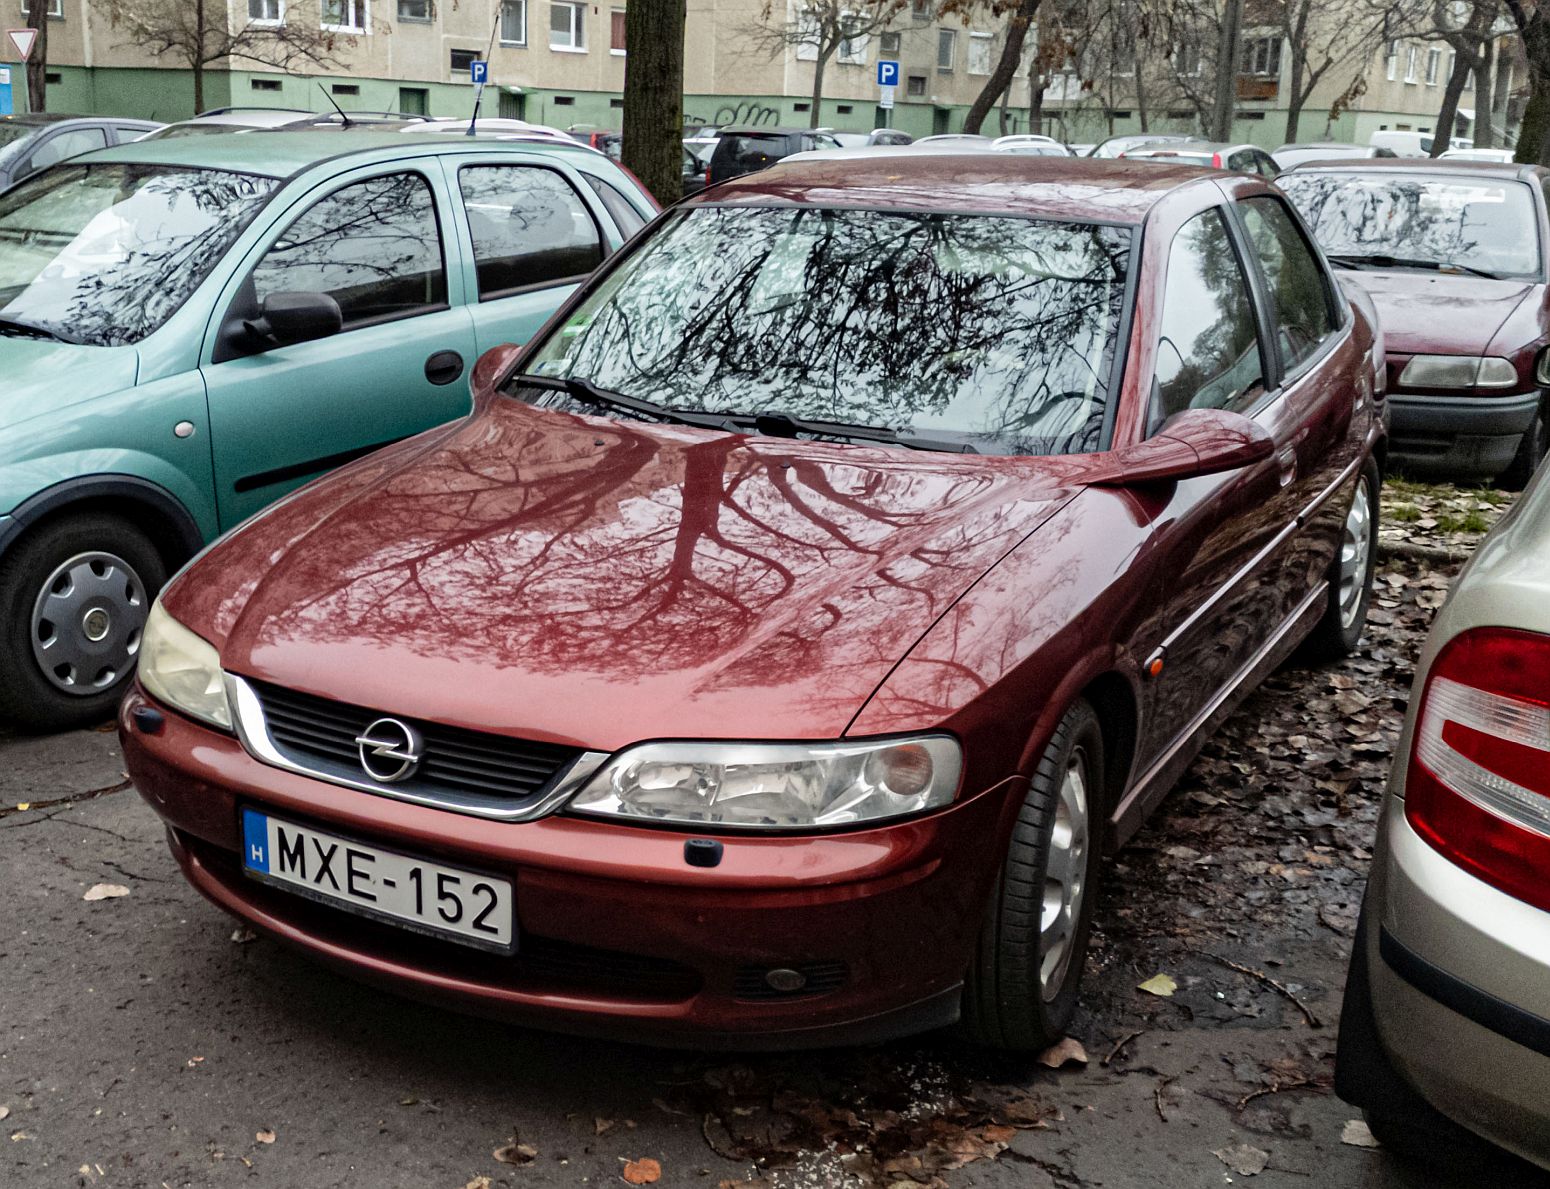 Diesen roter Opel Vectra B habe ich in November, 2022 fotografiert.